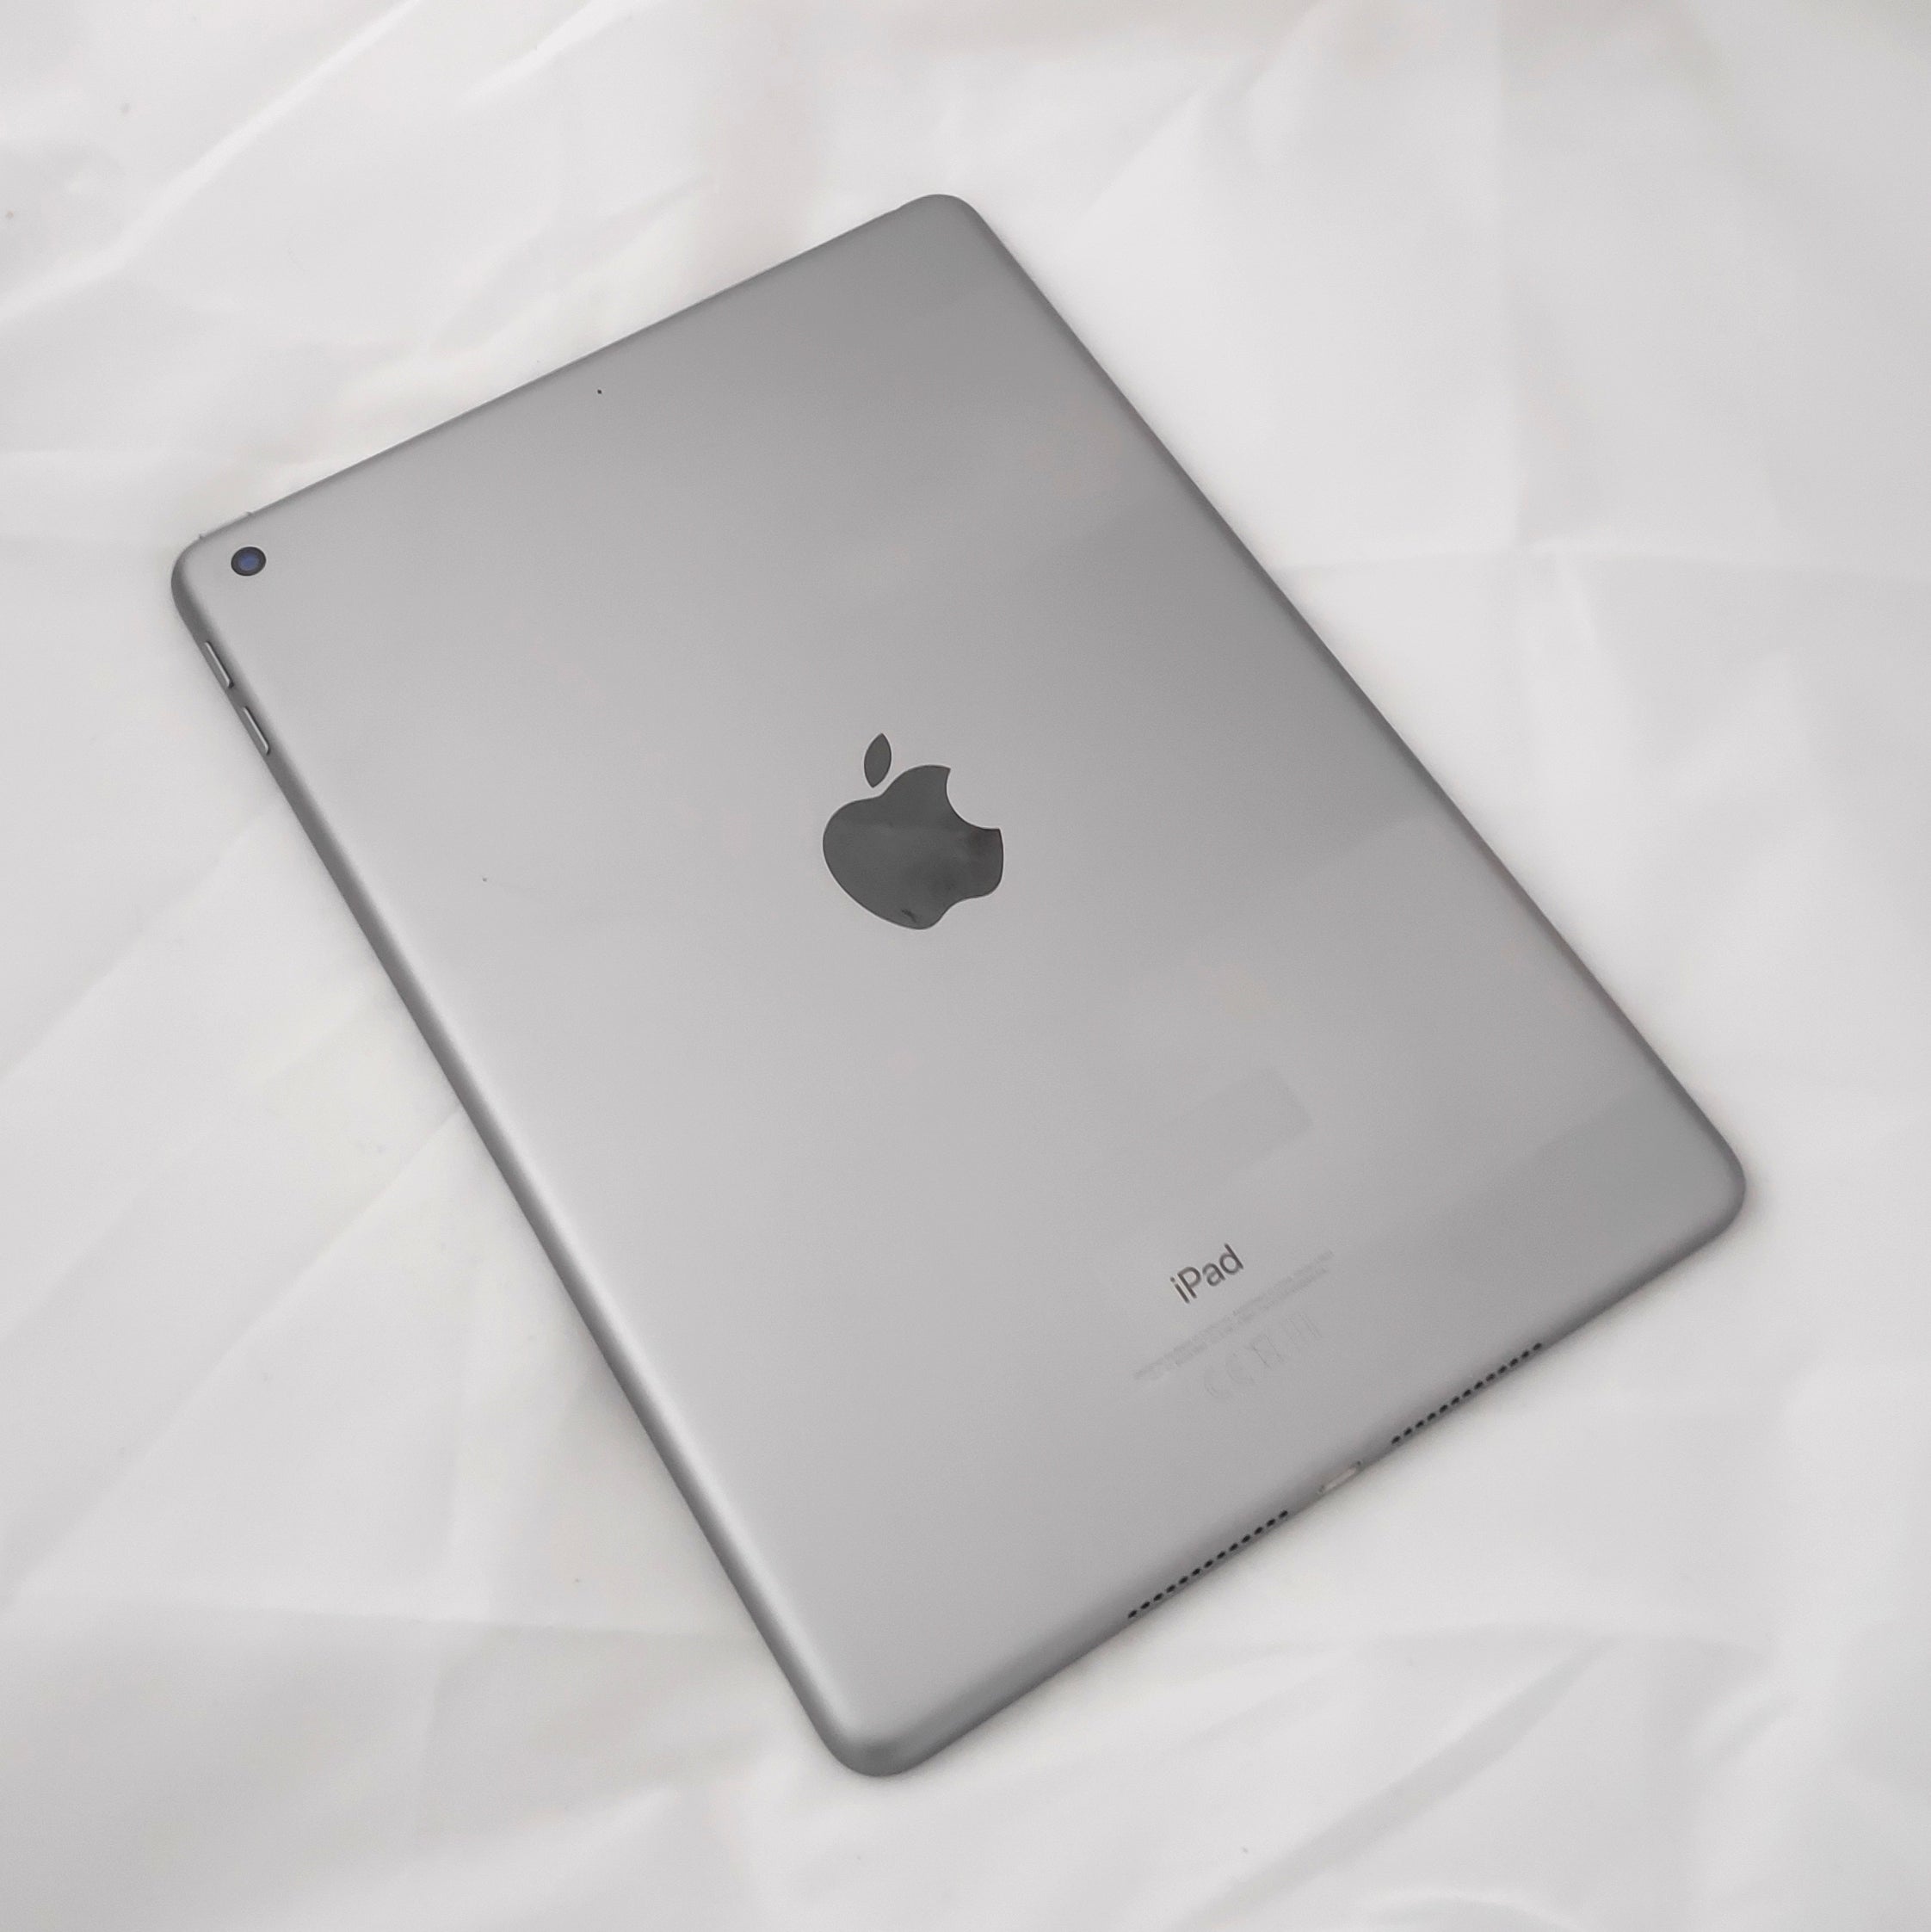 Apple iPad 6 32GB Wi-Fi Space Gray (Like New) Free Shipping